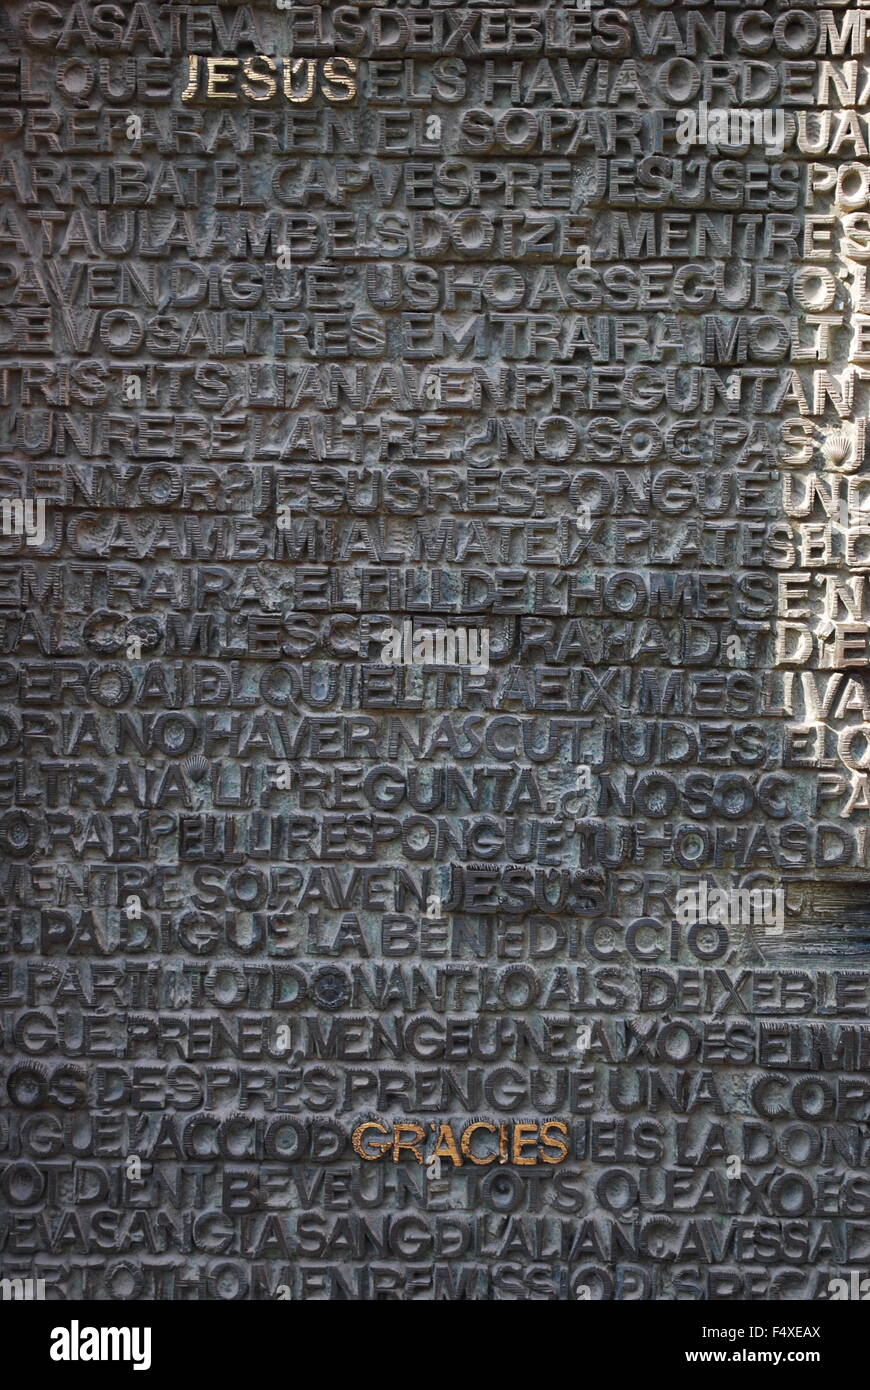 In bronzo della porta principale della Sagrada Familia, la cattedrale progettata da Gaudì. Dettagli architettonici raffiguranti le parole in rilievo. Foto Stock